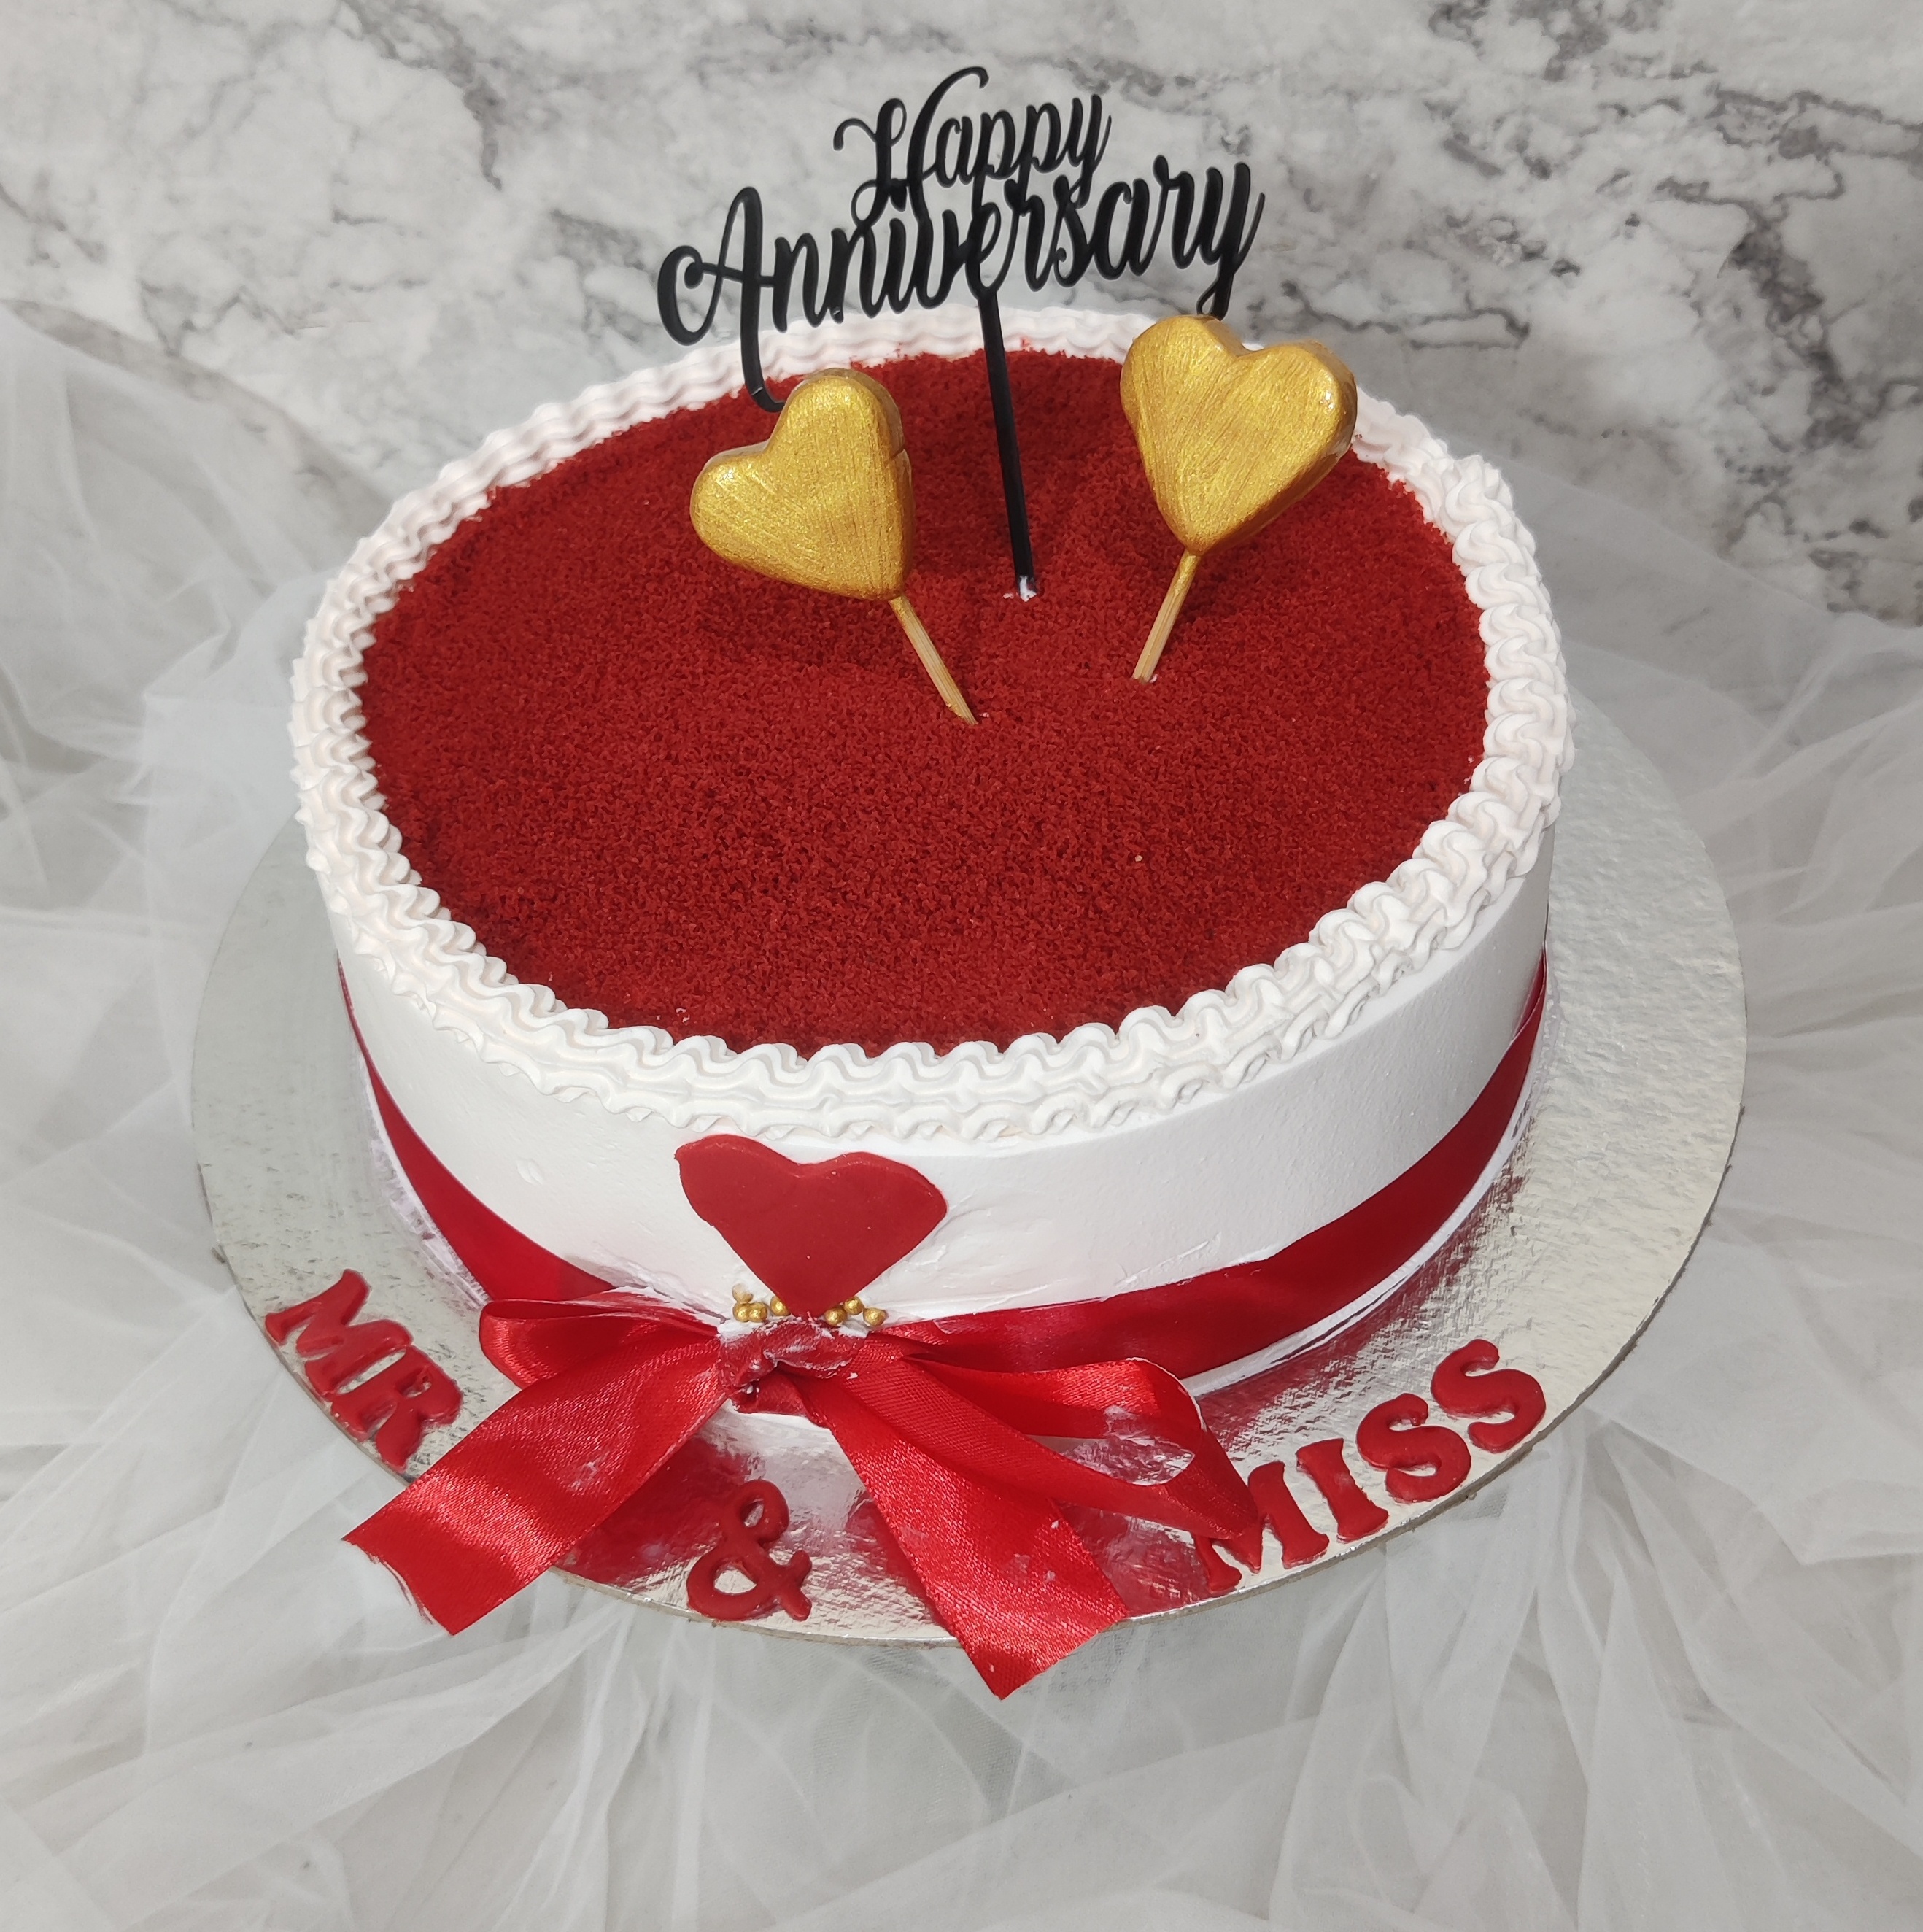 Very popular anniversary cake 4 kg Red velvet